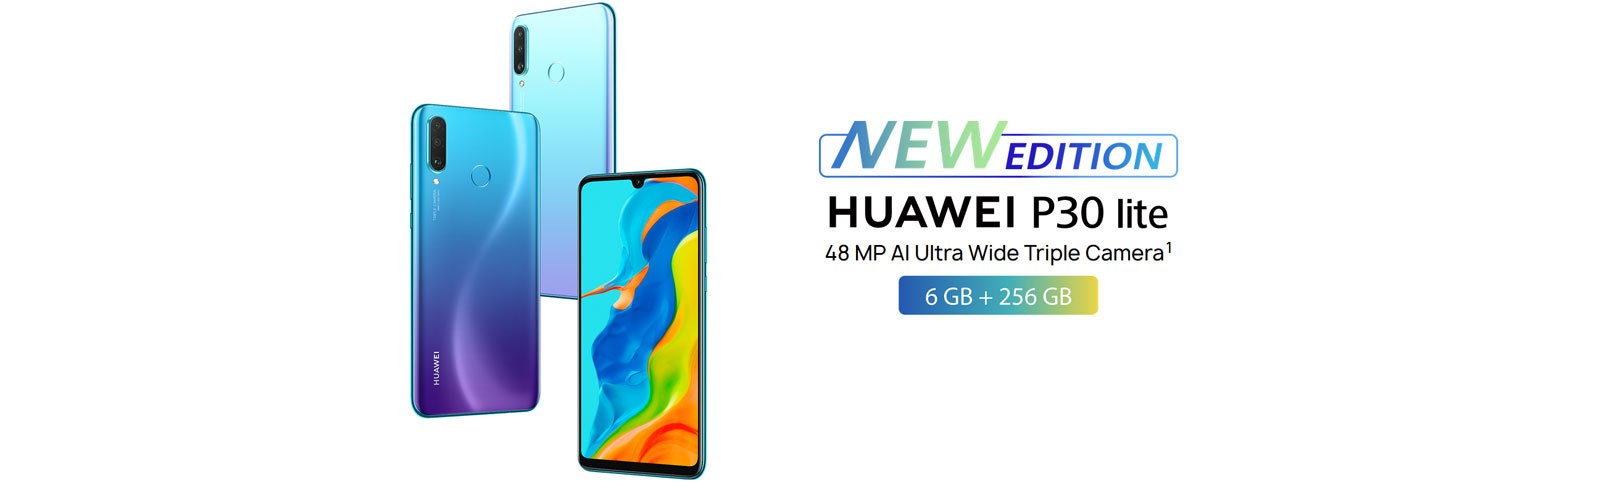 Huawei P30 Lite Phiên bản mới chính thức có bộ nhớ RAM 6GB 256GB, camera chính 48 MP